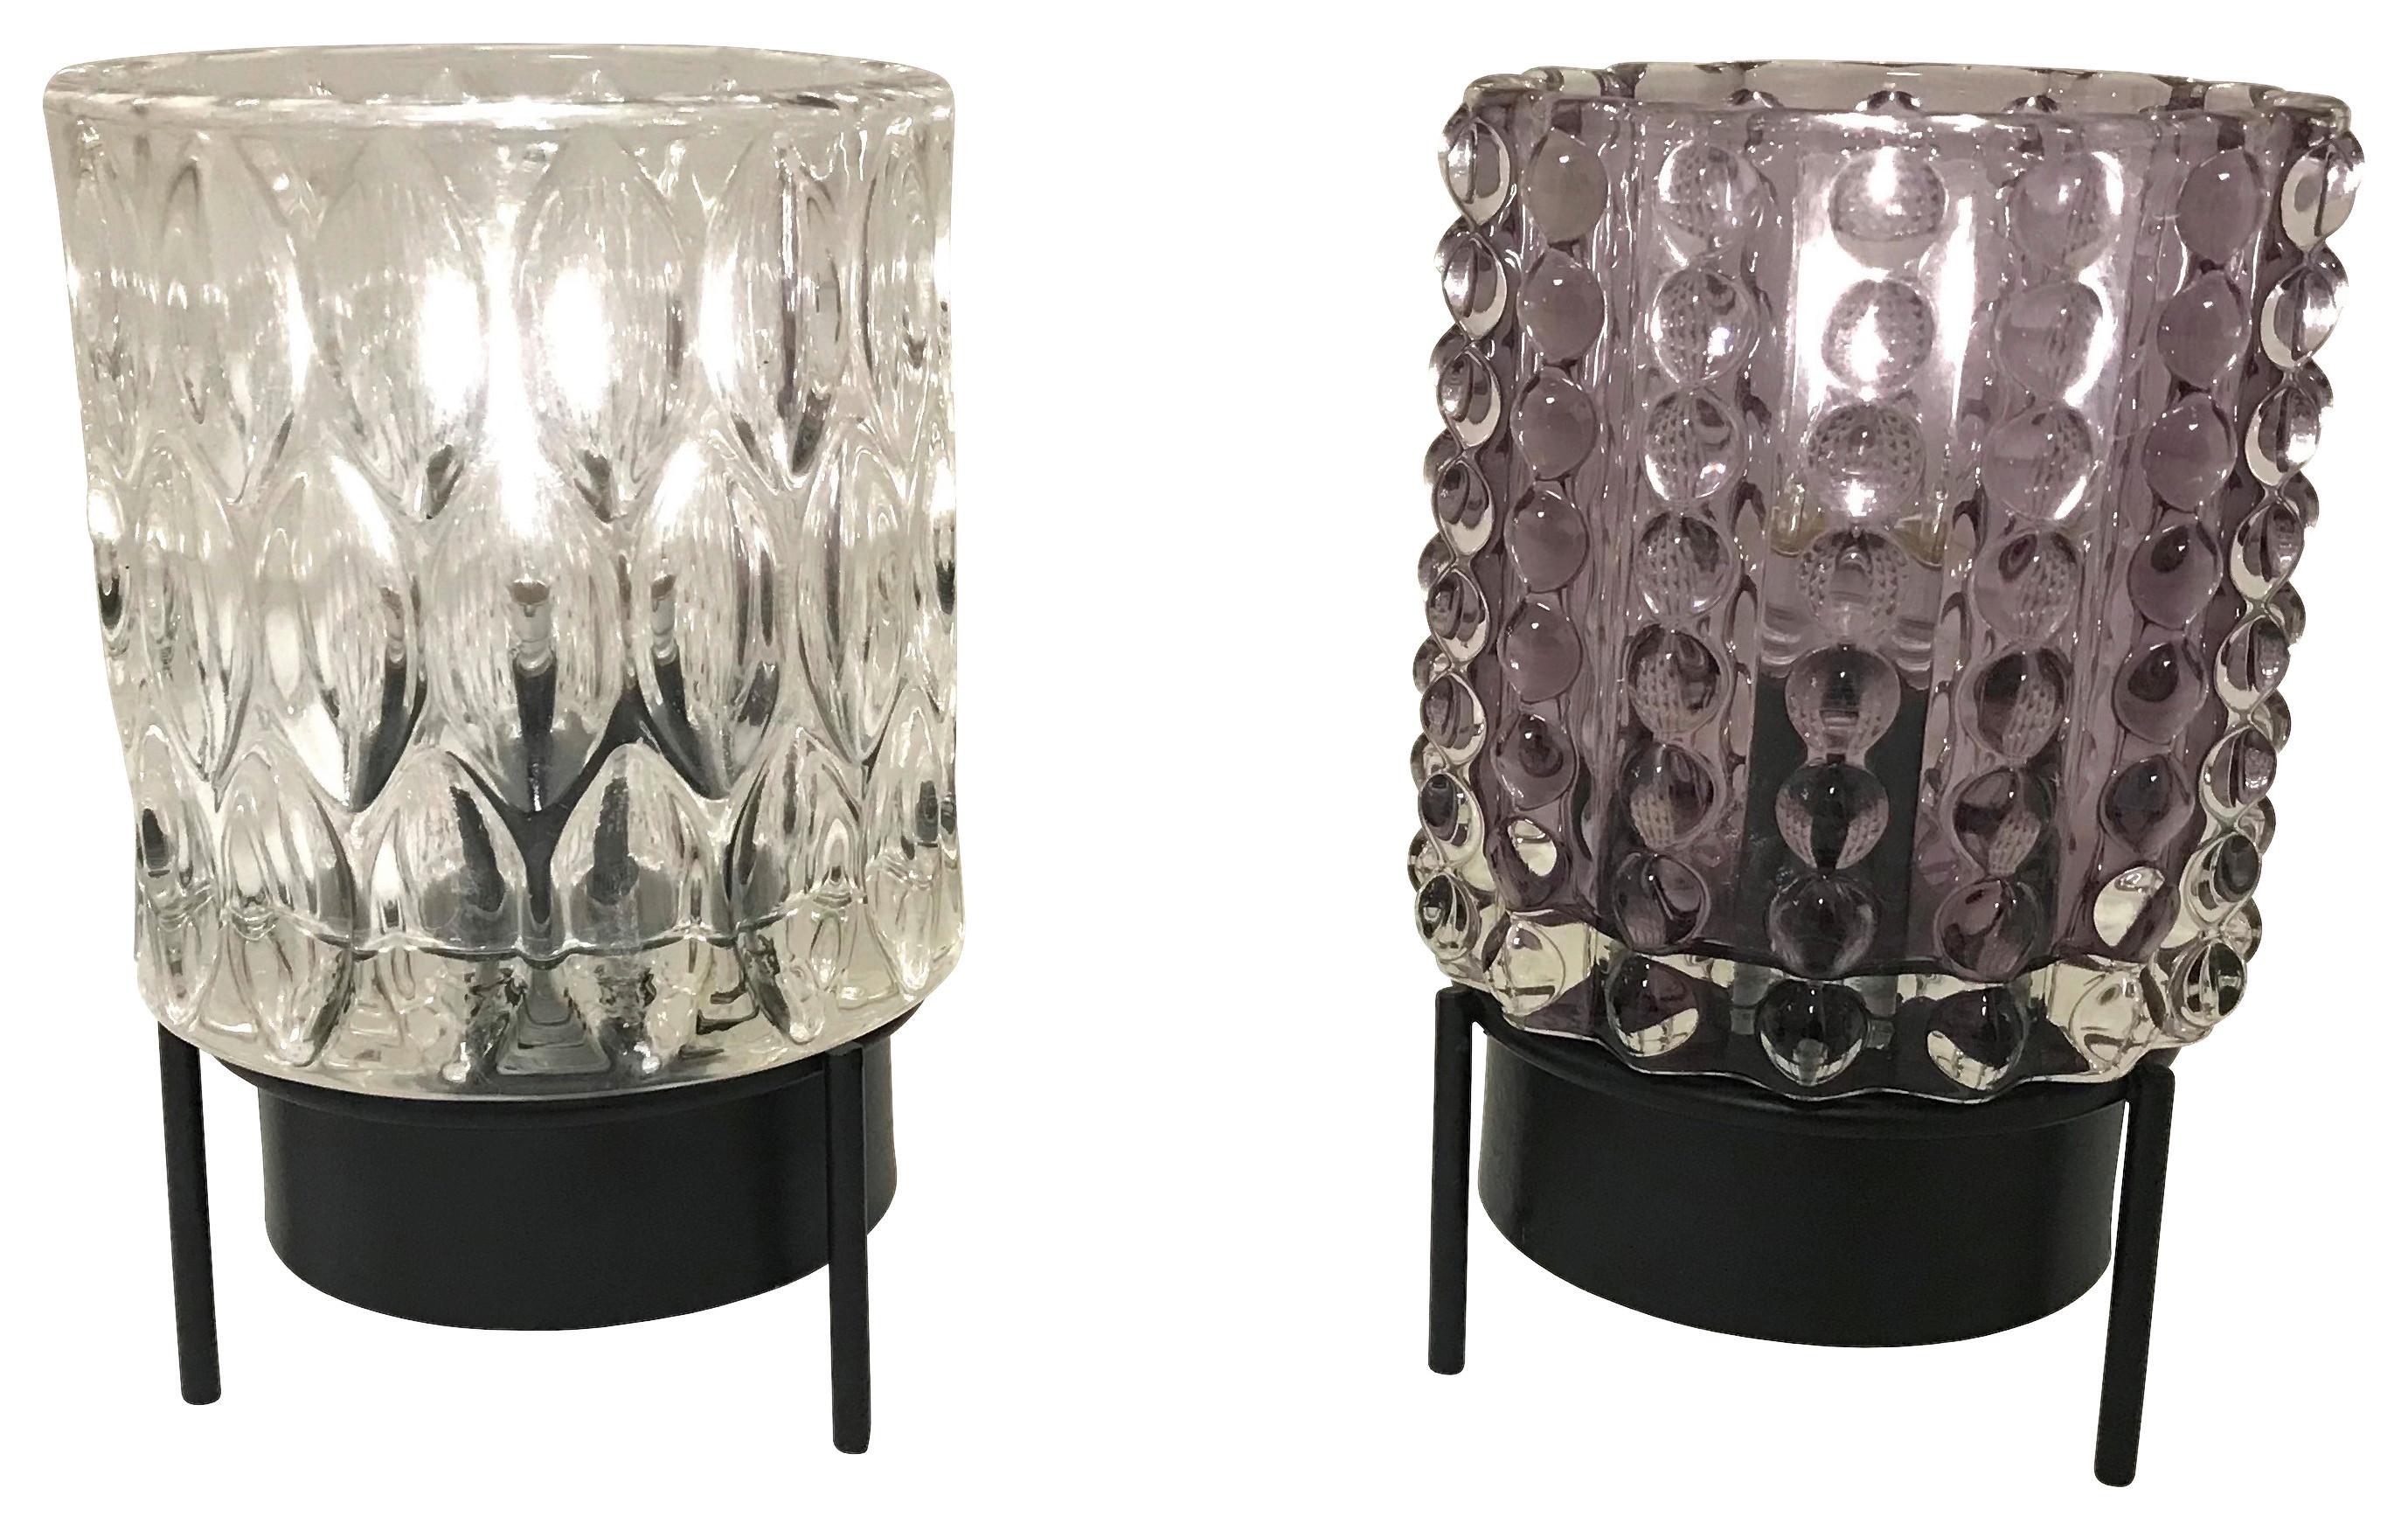 Lampă LED decorativă Adelina - clar/gri, Modern, sticlă/metal (9/9/14.5cm)